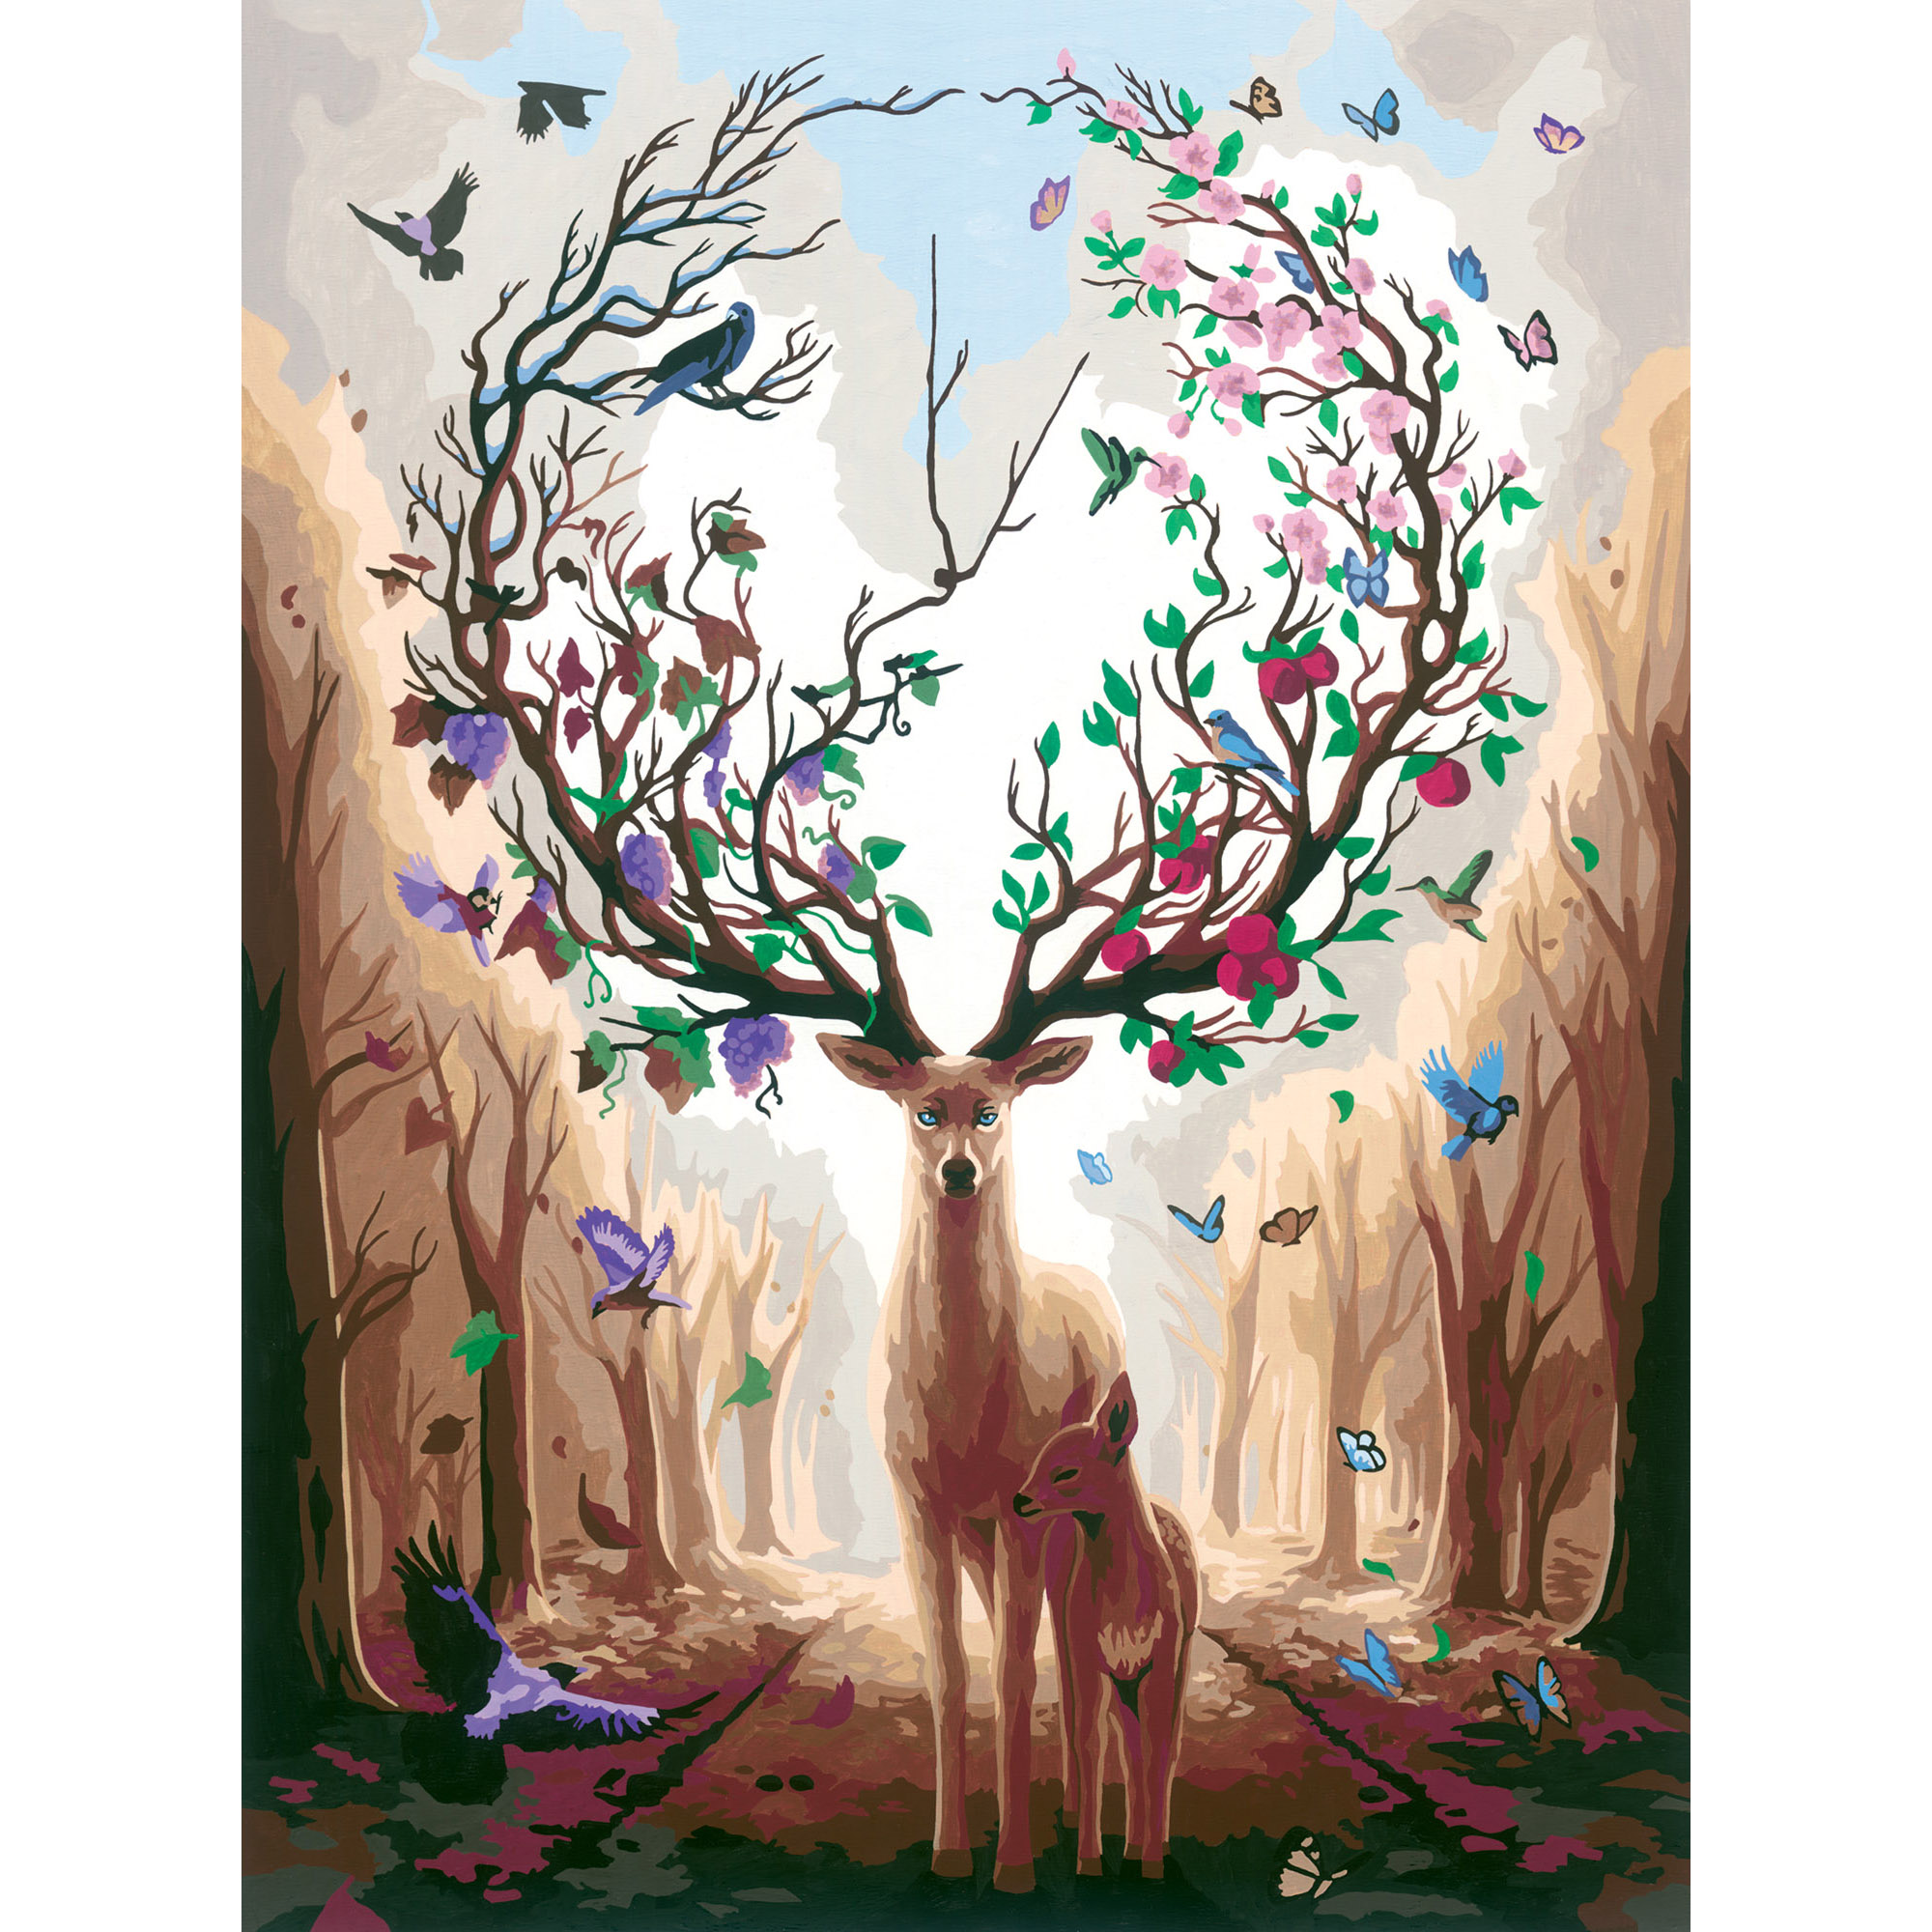 Ravensburger - creart cervo magico, kit per dipingere con i numeri, contiene tavola prestampata 40x30 cm, pennello, colori e accessori, gioco creativo e relax per adulti 14+ anni - CREART